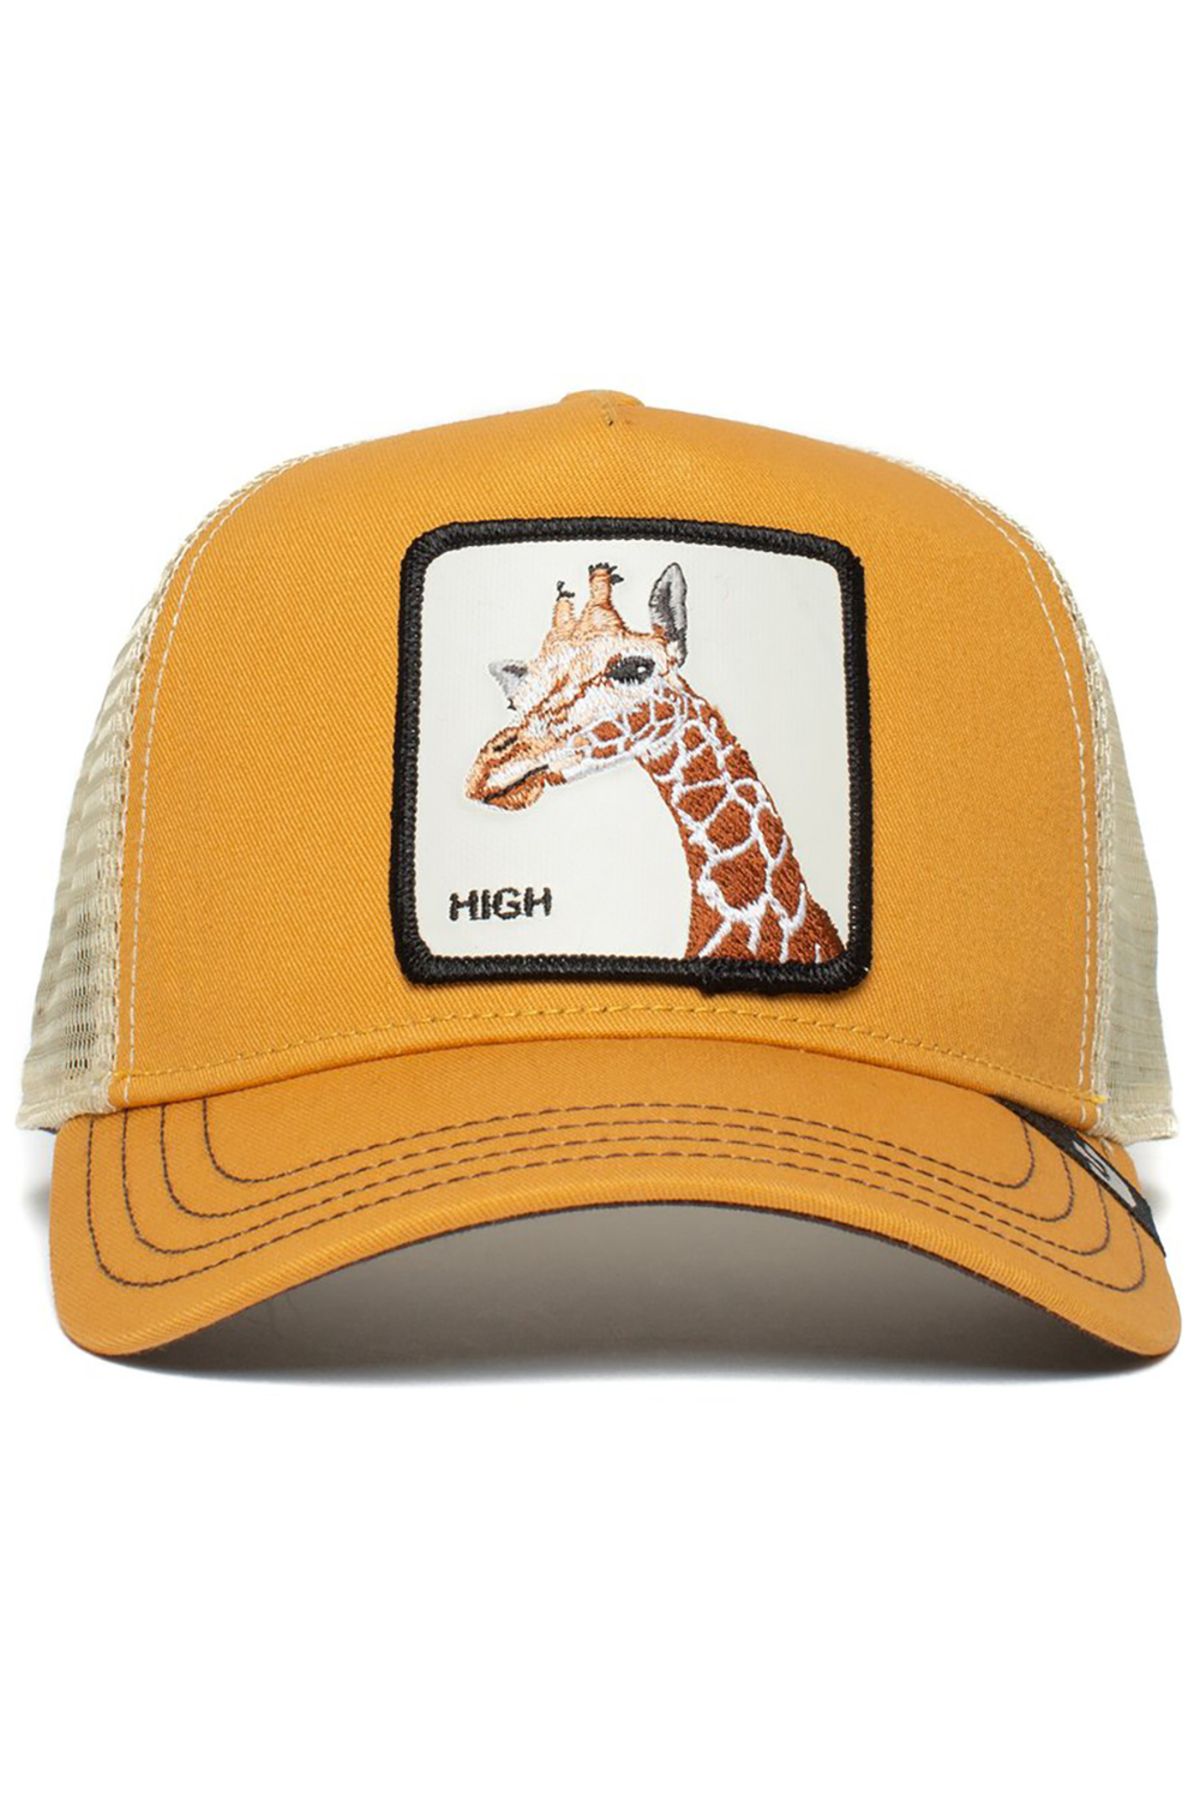 Goorin Bros So High Sarı Şapka (101-0004-YLW)